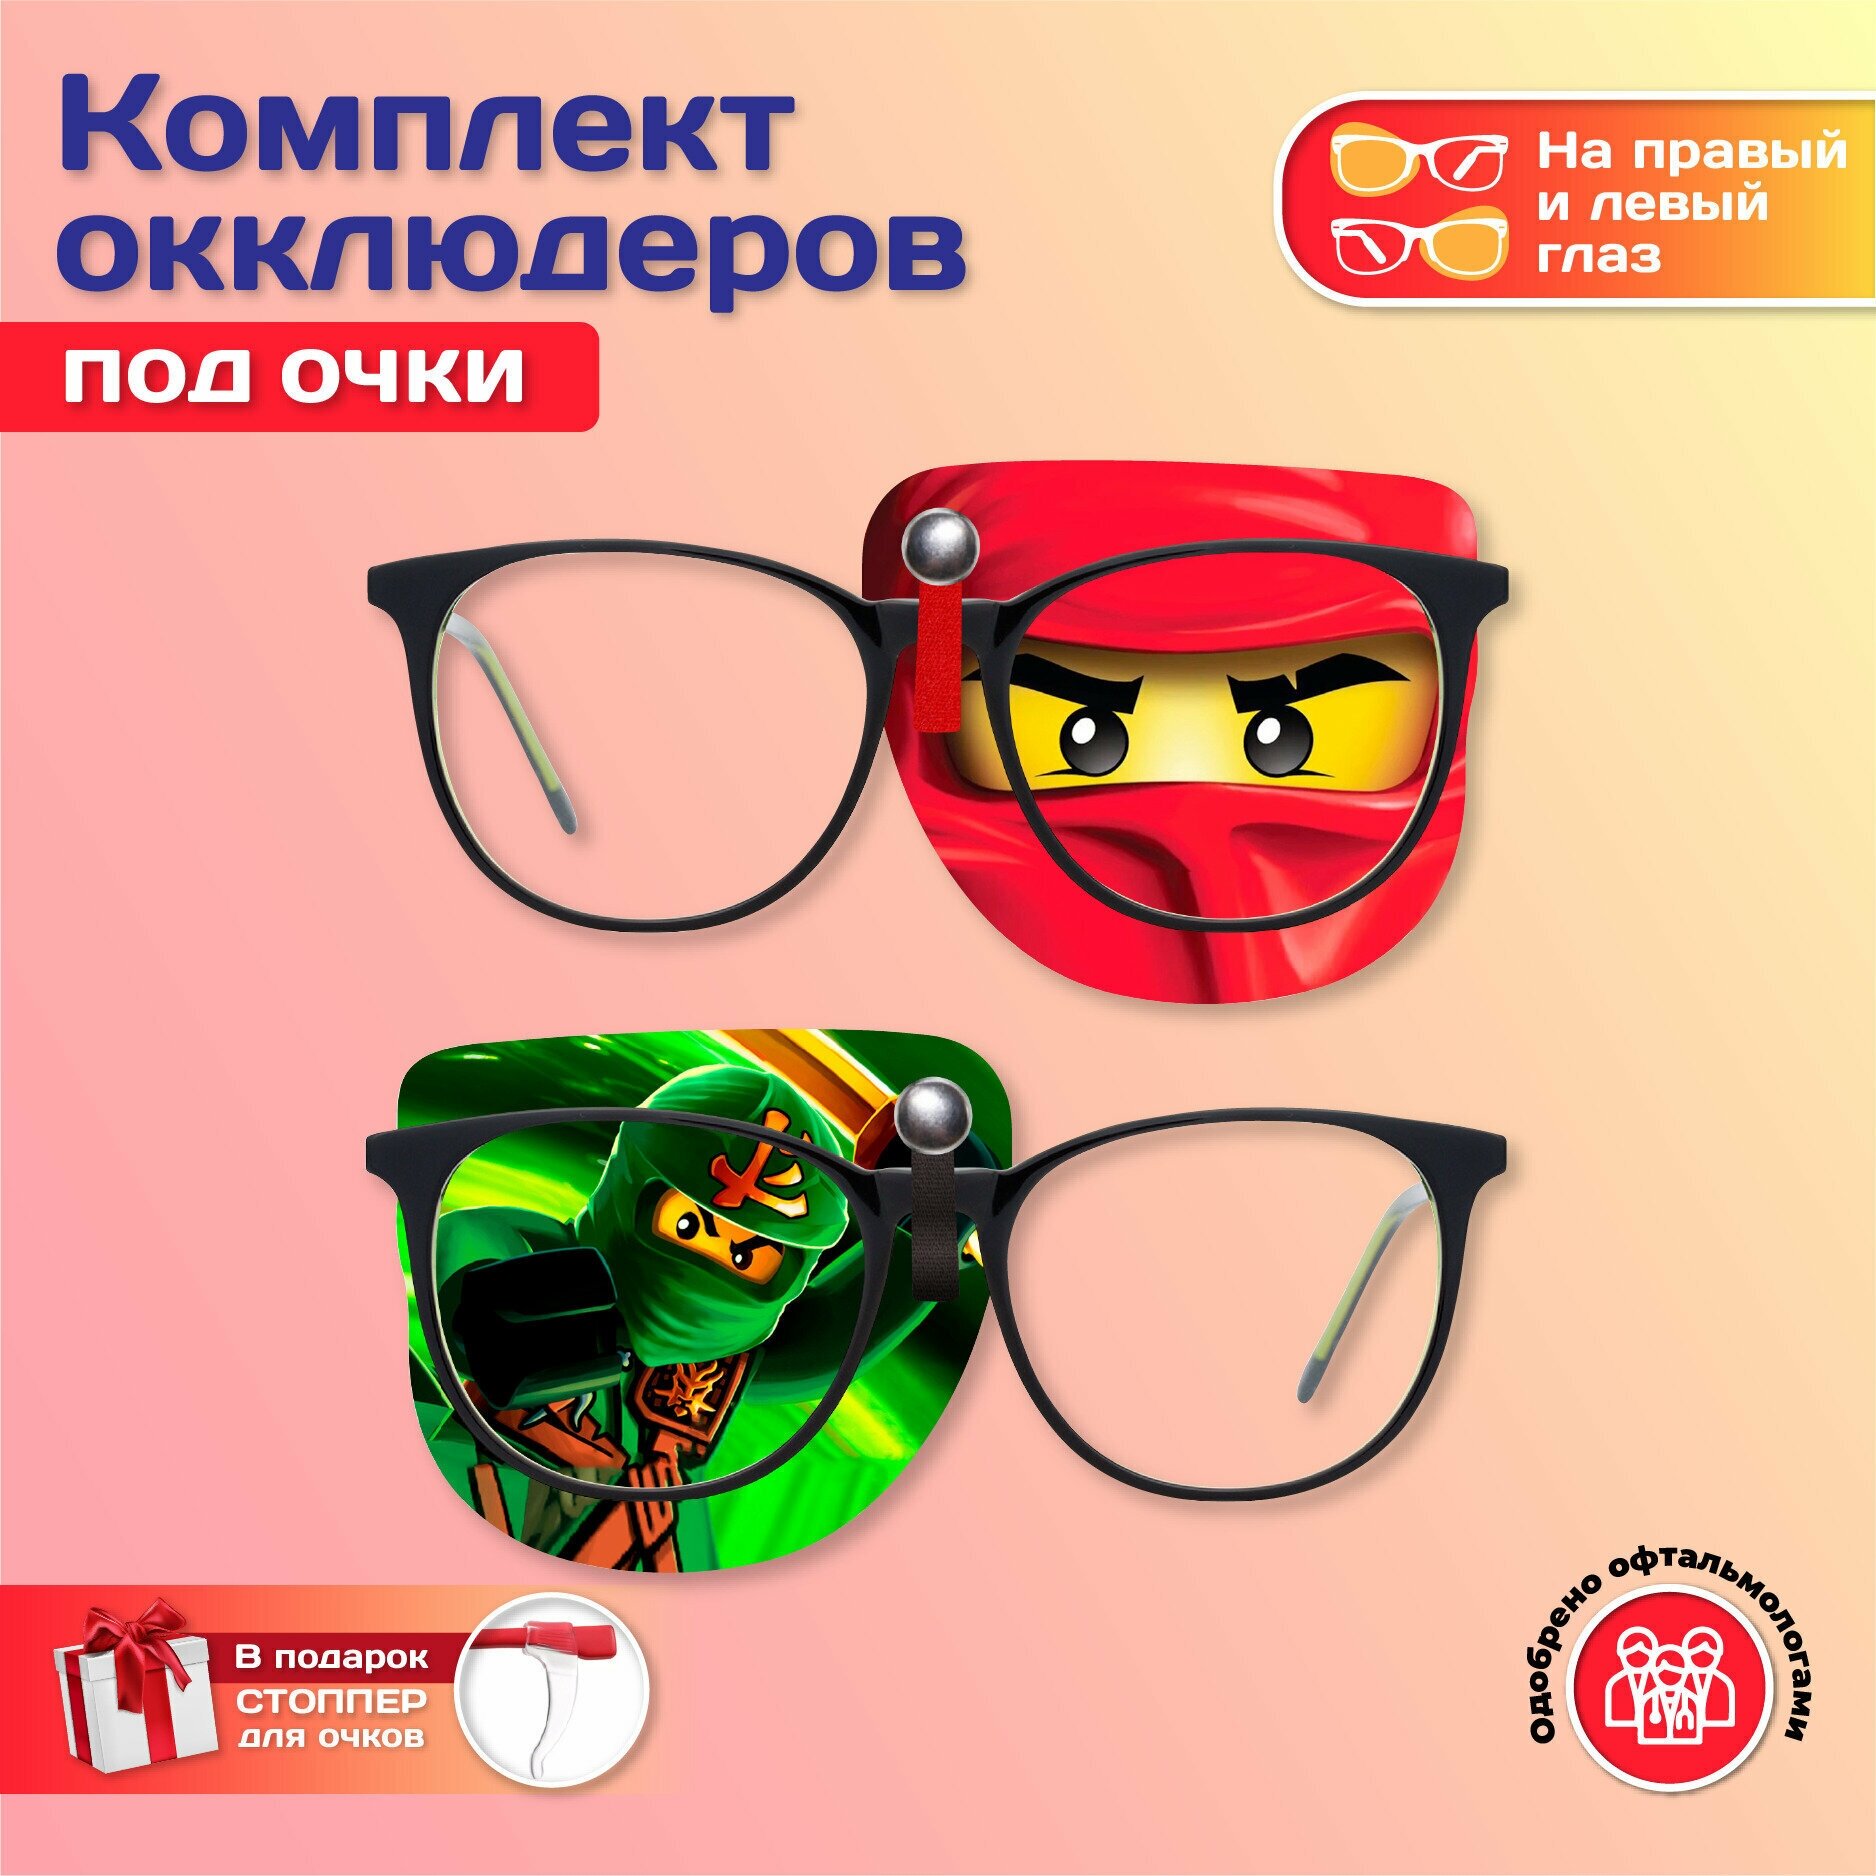 Комплект окклюдеров под очки "Ninjago" на левый и правый глаз